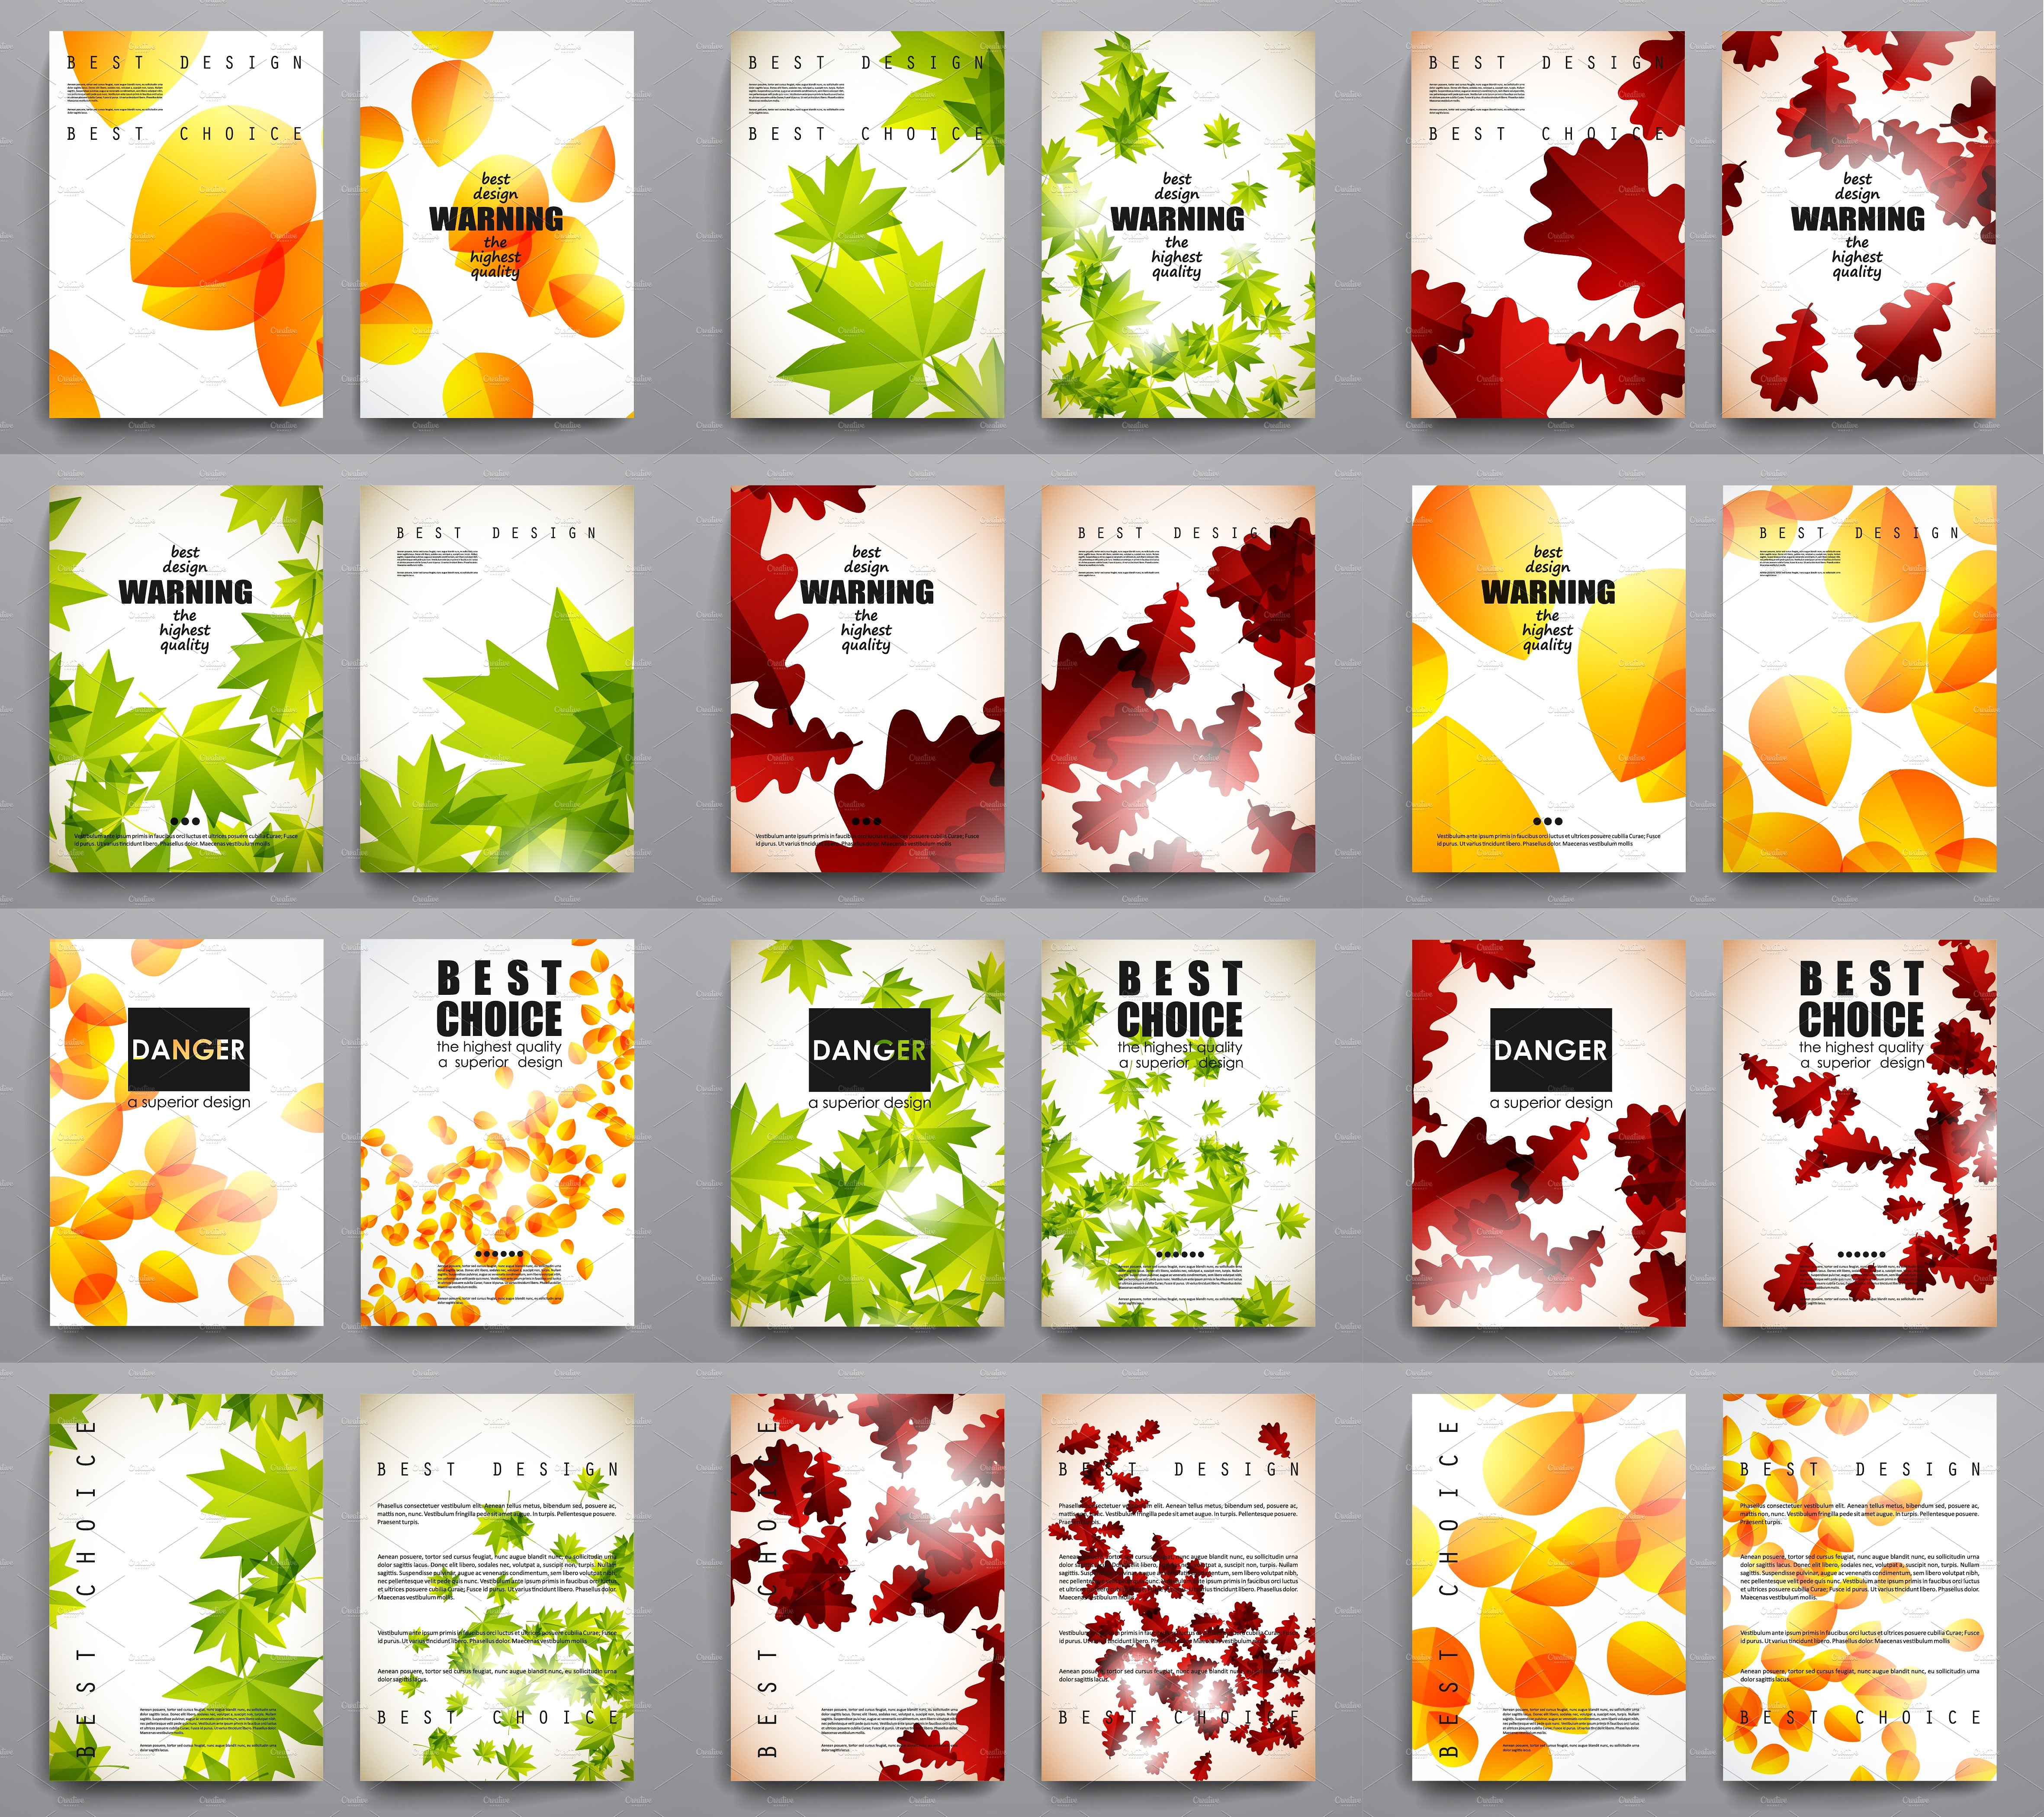 一大组秋天风格树叶海报模板 Big set of autumn style templates插图